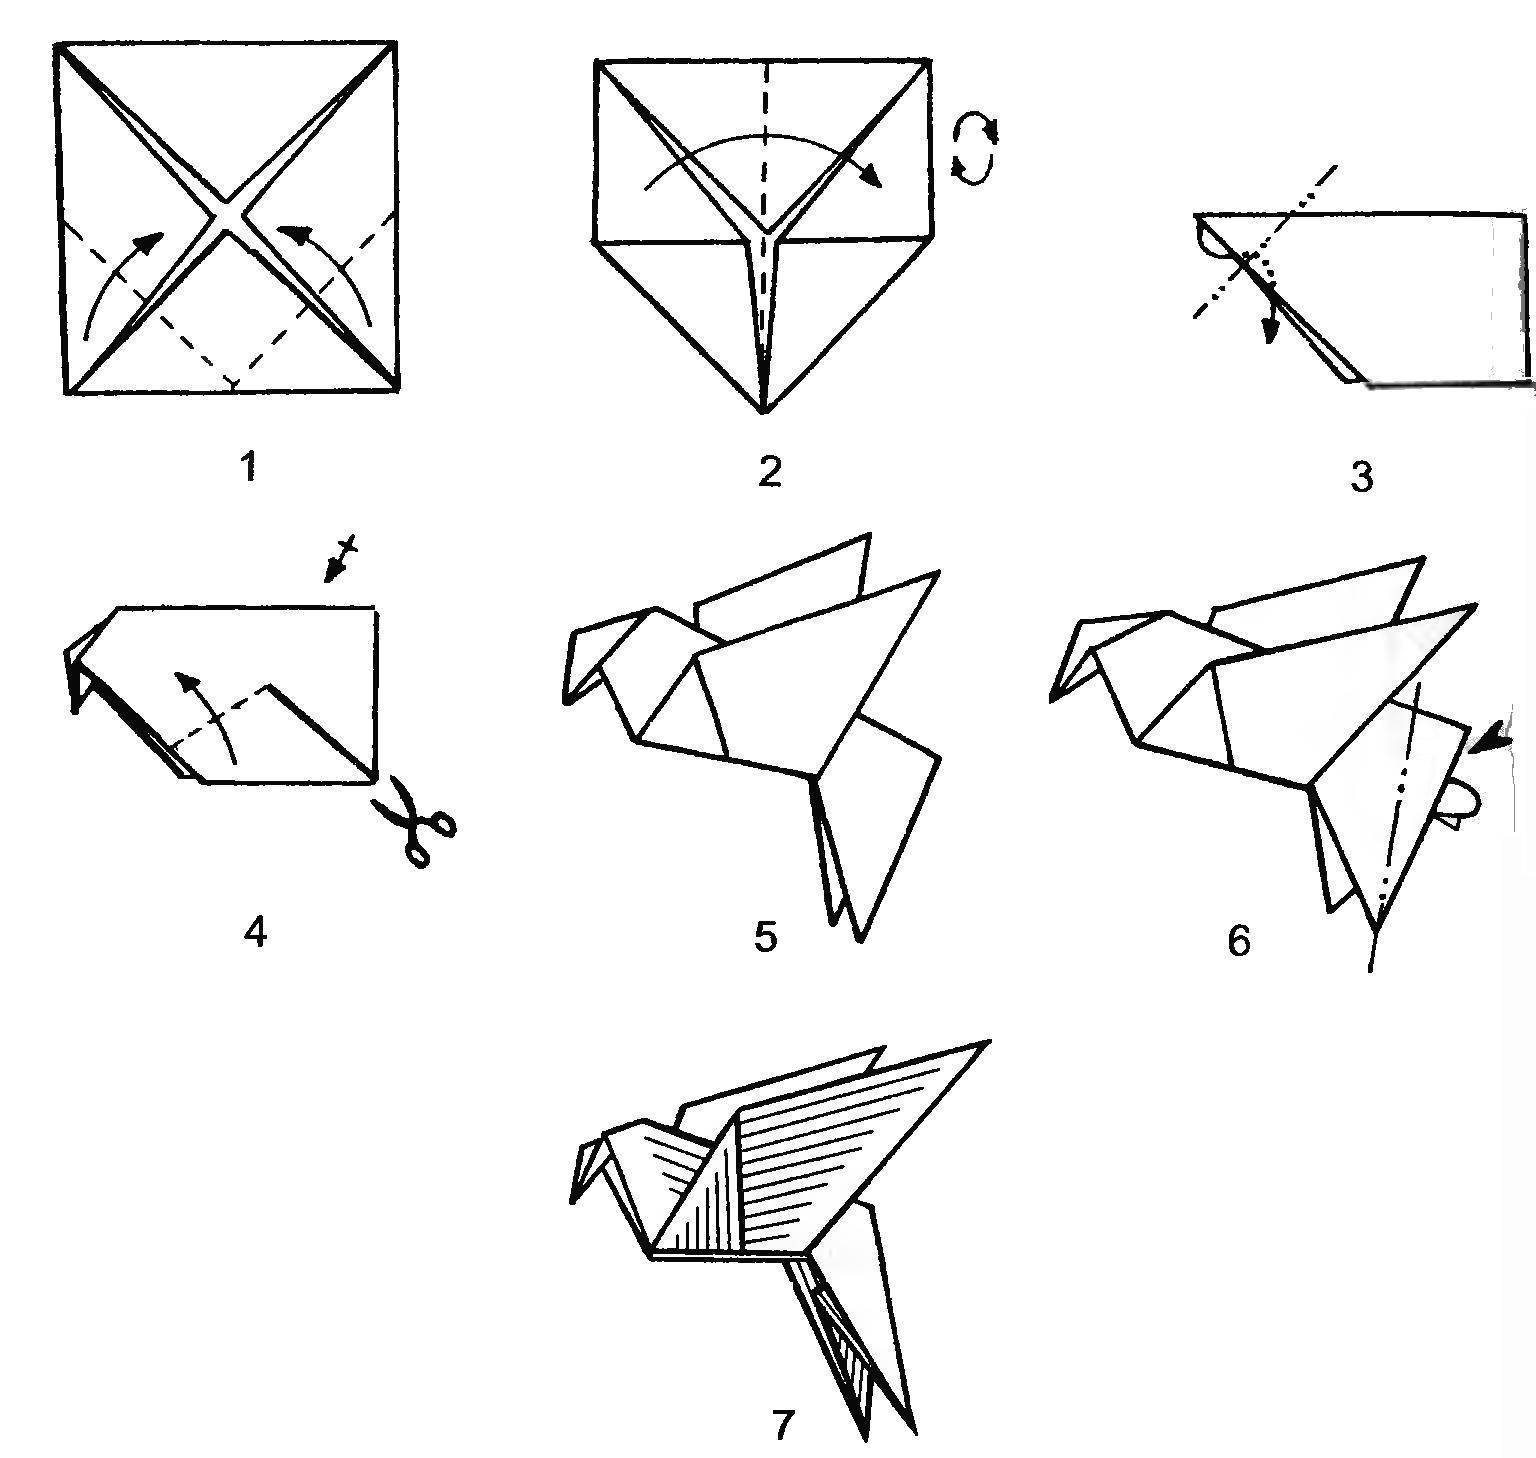 Оригами голубь схема. Птичка оригами из бумаги для детей пошаговая инструкция. Голубь оригами для детей пошагово. Птица оригами из бумаги простая схема для детей. Голубь из бумаги своими руками оригами схема простая для детей.